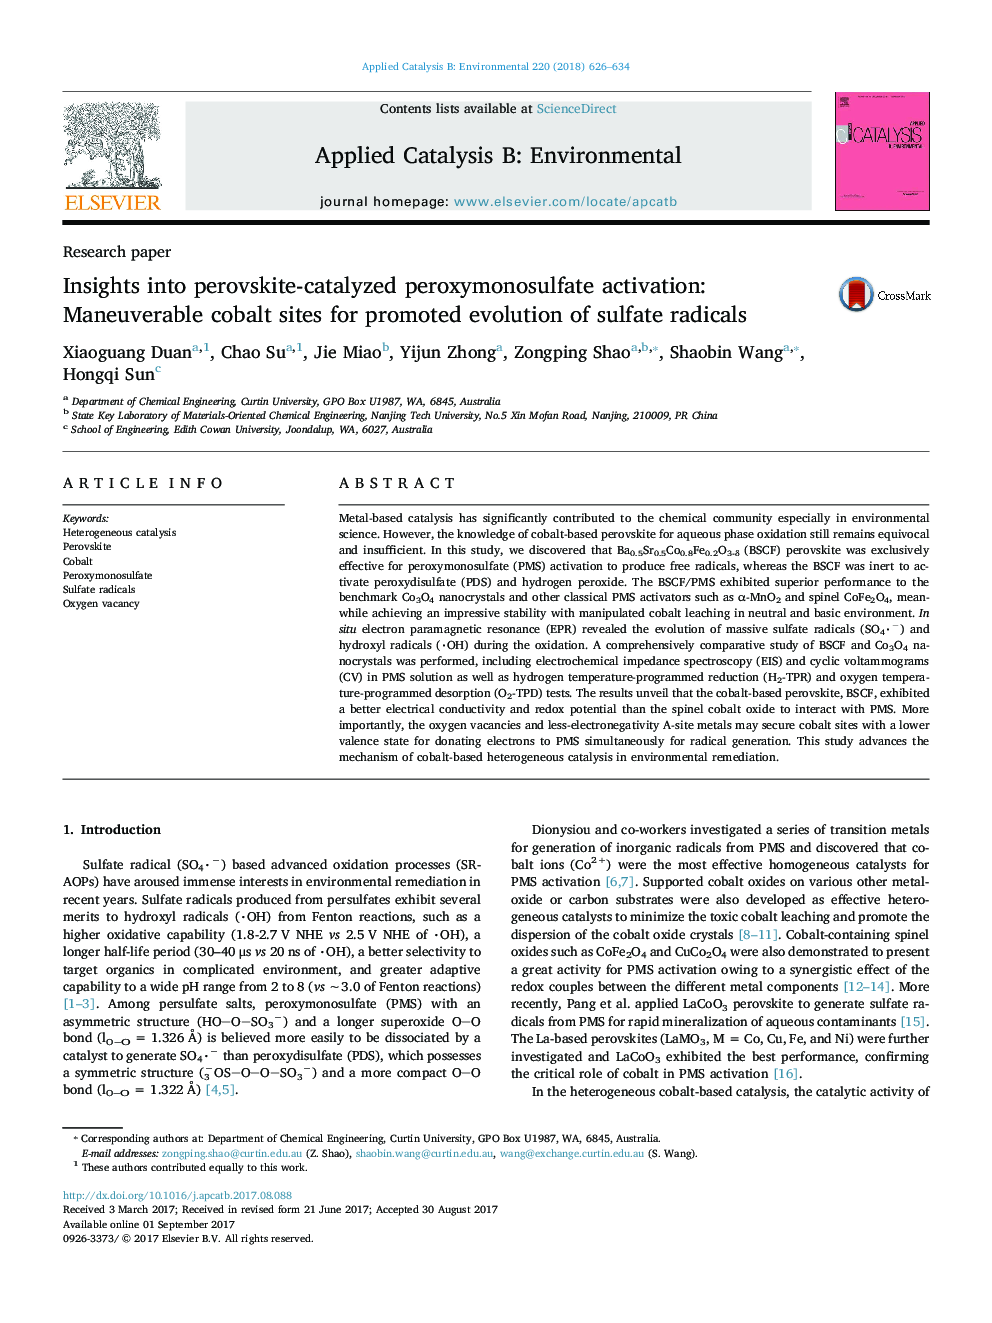 مقاله پژوهشی دیدگاه ها برای فعال سازی پراکسیمنسوفسفات پراکسیت کاتالیز شده: مکان های قابل کوبالت برای پیشرفت تکامل رادیکال های سولفات